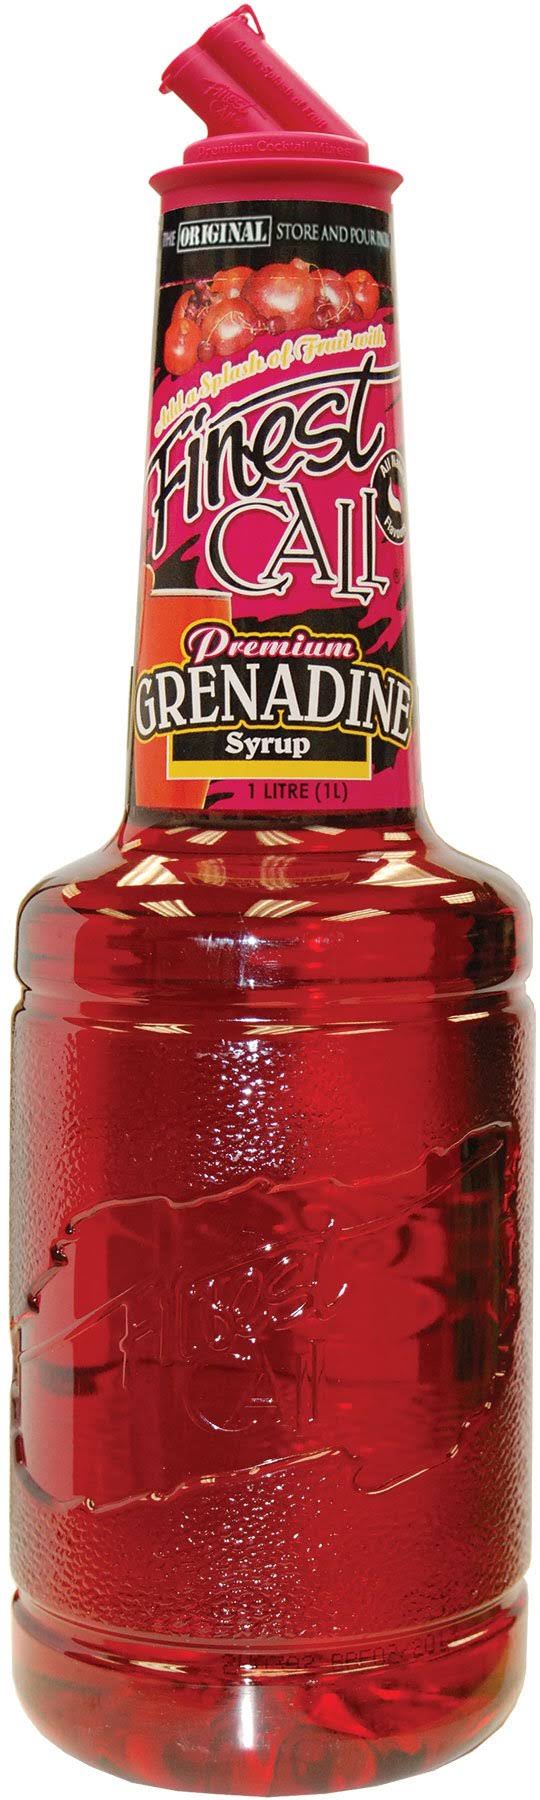 Finest Call Grenadine, 1 Liter Bottle (Pack of 3)